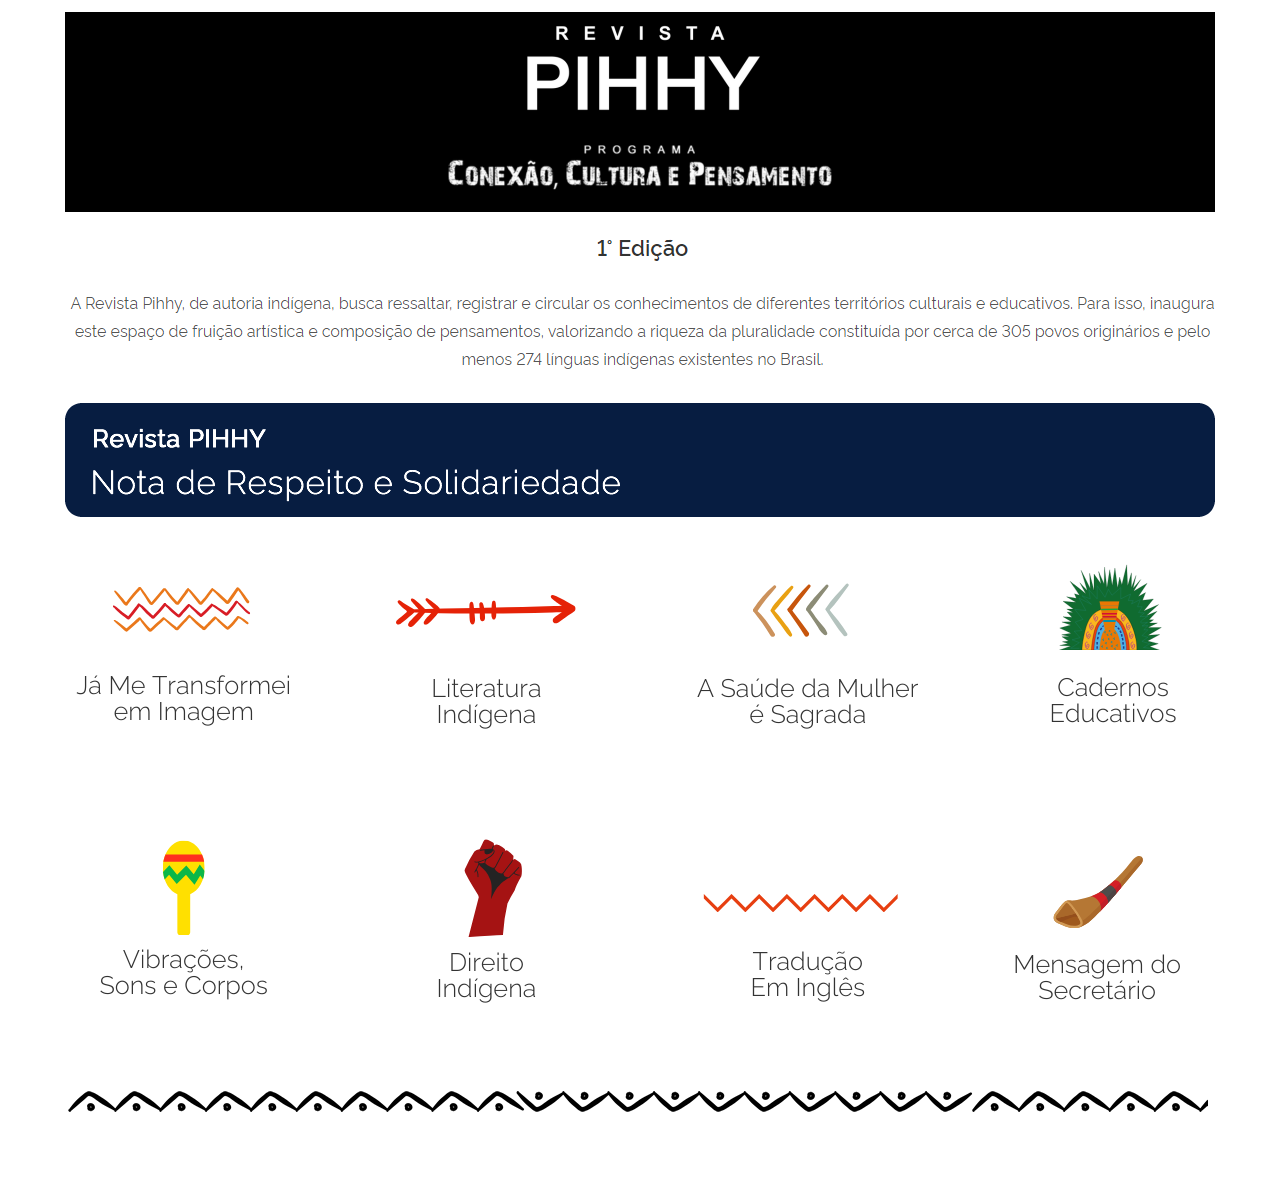 Pihhy-1 - Cards de categorias 17 Pihhy-1 - Cards de categorias